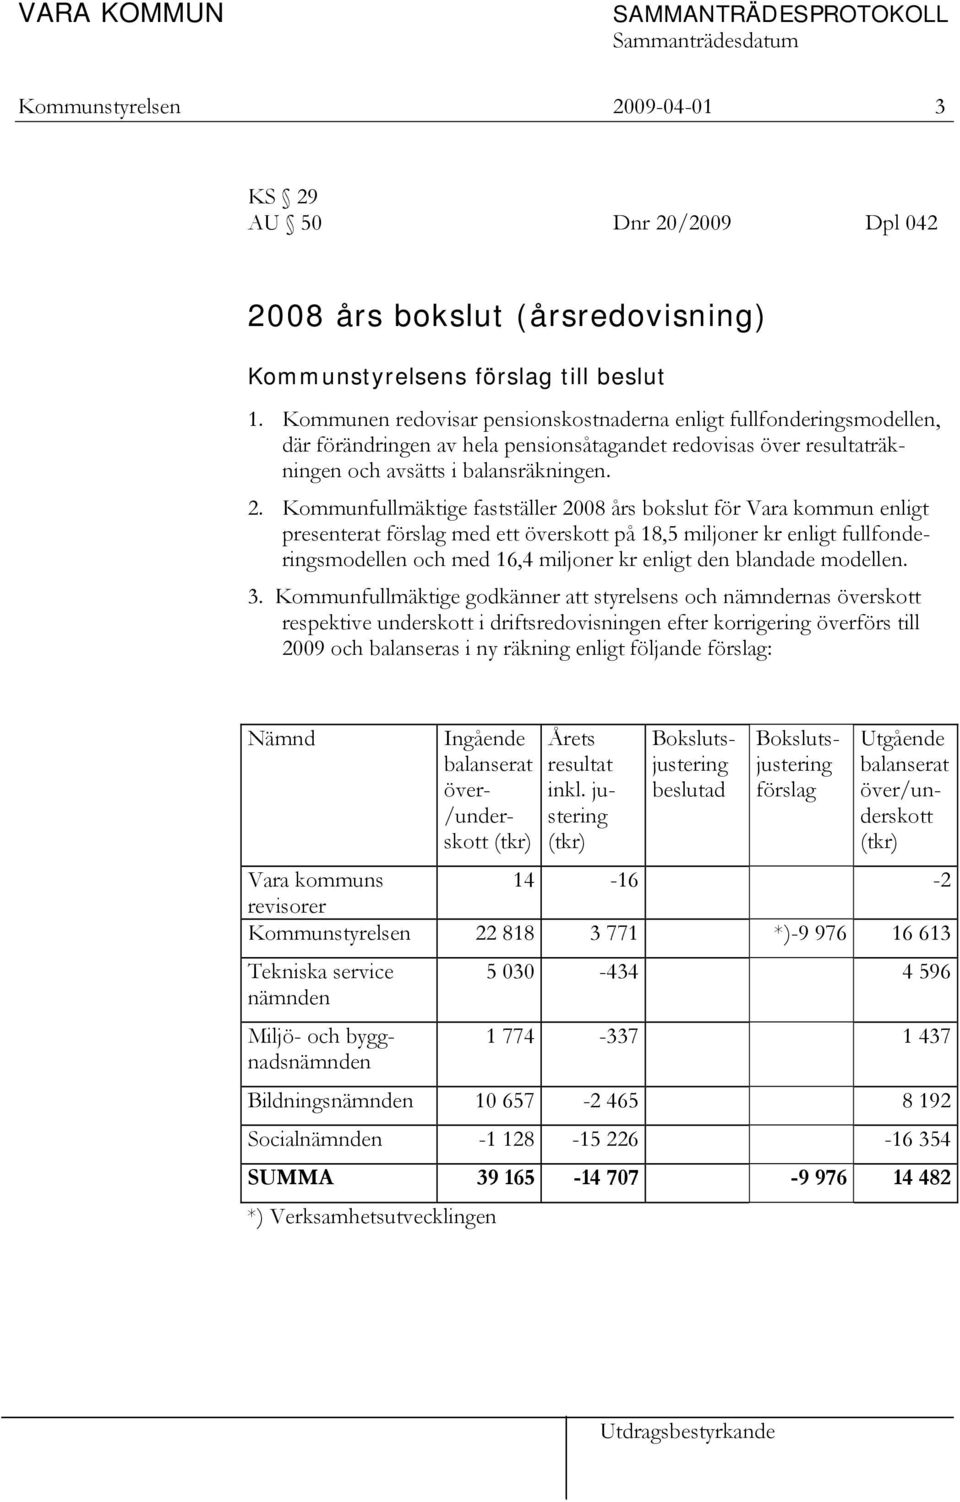 Kommunfullmäktige fastställer 2008 års bokslut för Vara kommun enligt presenterat förslag med ett överskott på 18,5 miljoner kr enligt fullfonderingsmodellen och med 16,4 miljoner kr enligt den